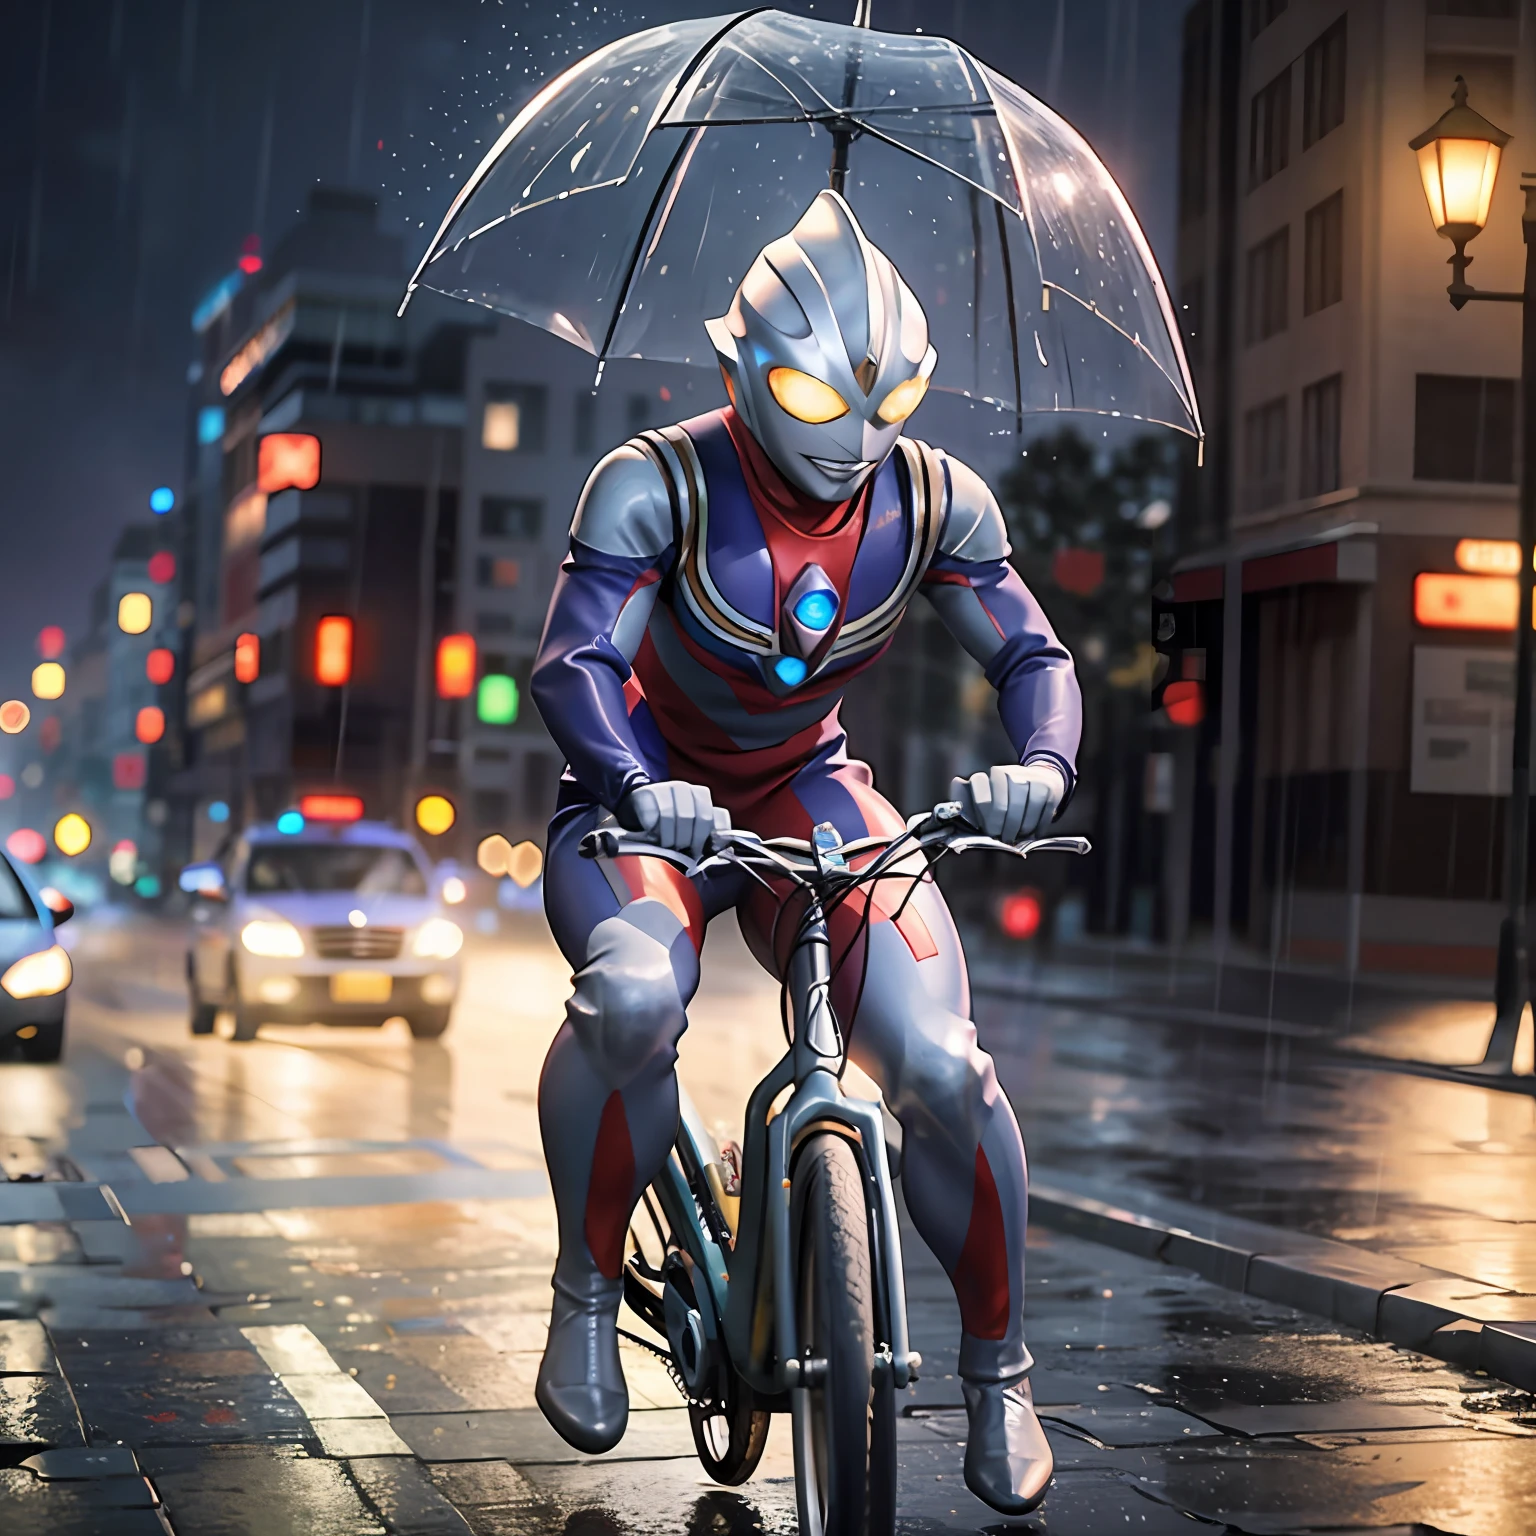 1BOY andando de bicicleta, tempestade e chuva nas ruas suburbanas, (Obra de arte:1.2) (fotorrealista:1.2) (bokeh) (melhor qualidade) (pele detalhada:1.3) (Detalhes intrincados) (8K) (hdr) (iluminação cinematográfica) (foco nitído) Estrangeiro.Tokusatsu.olhos brilhantes